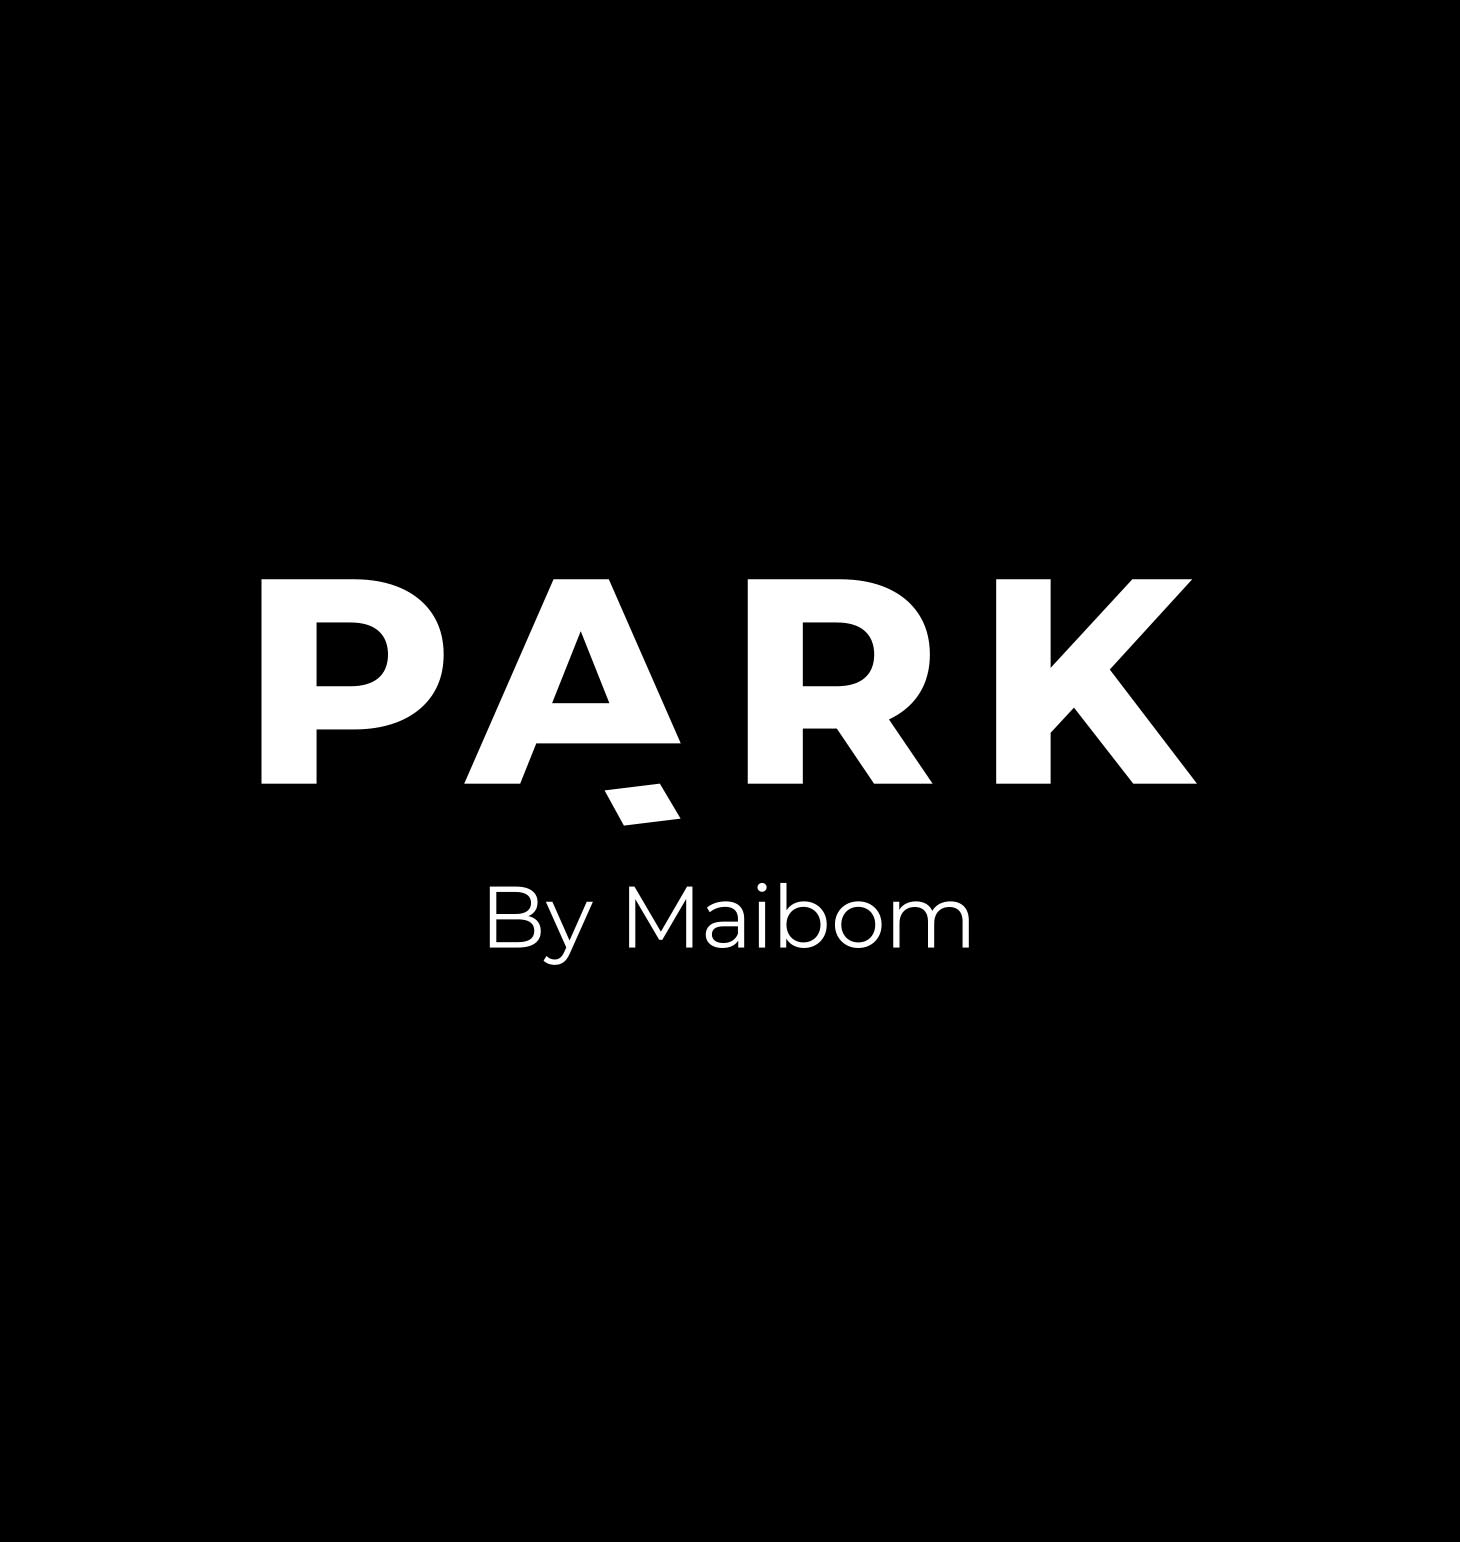 Park by Maibom